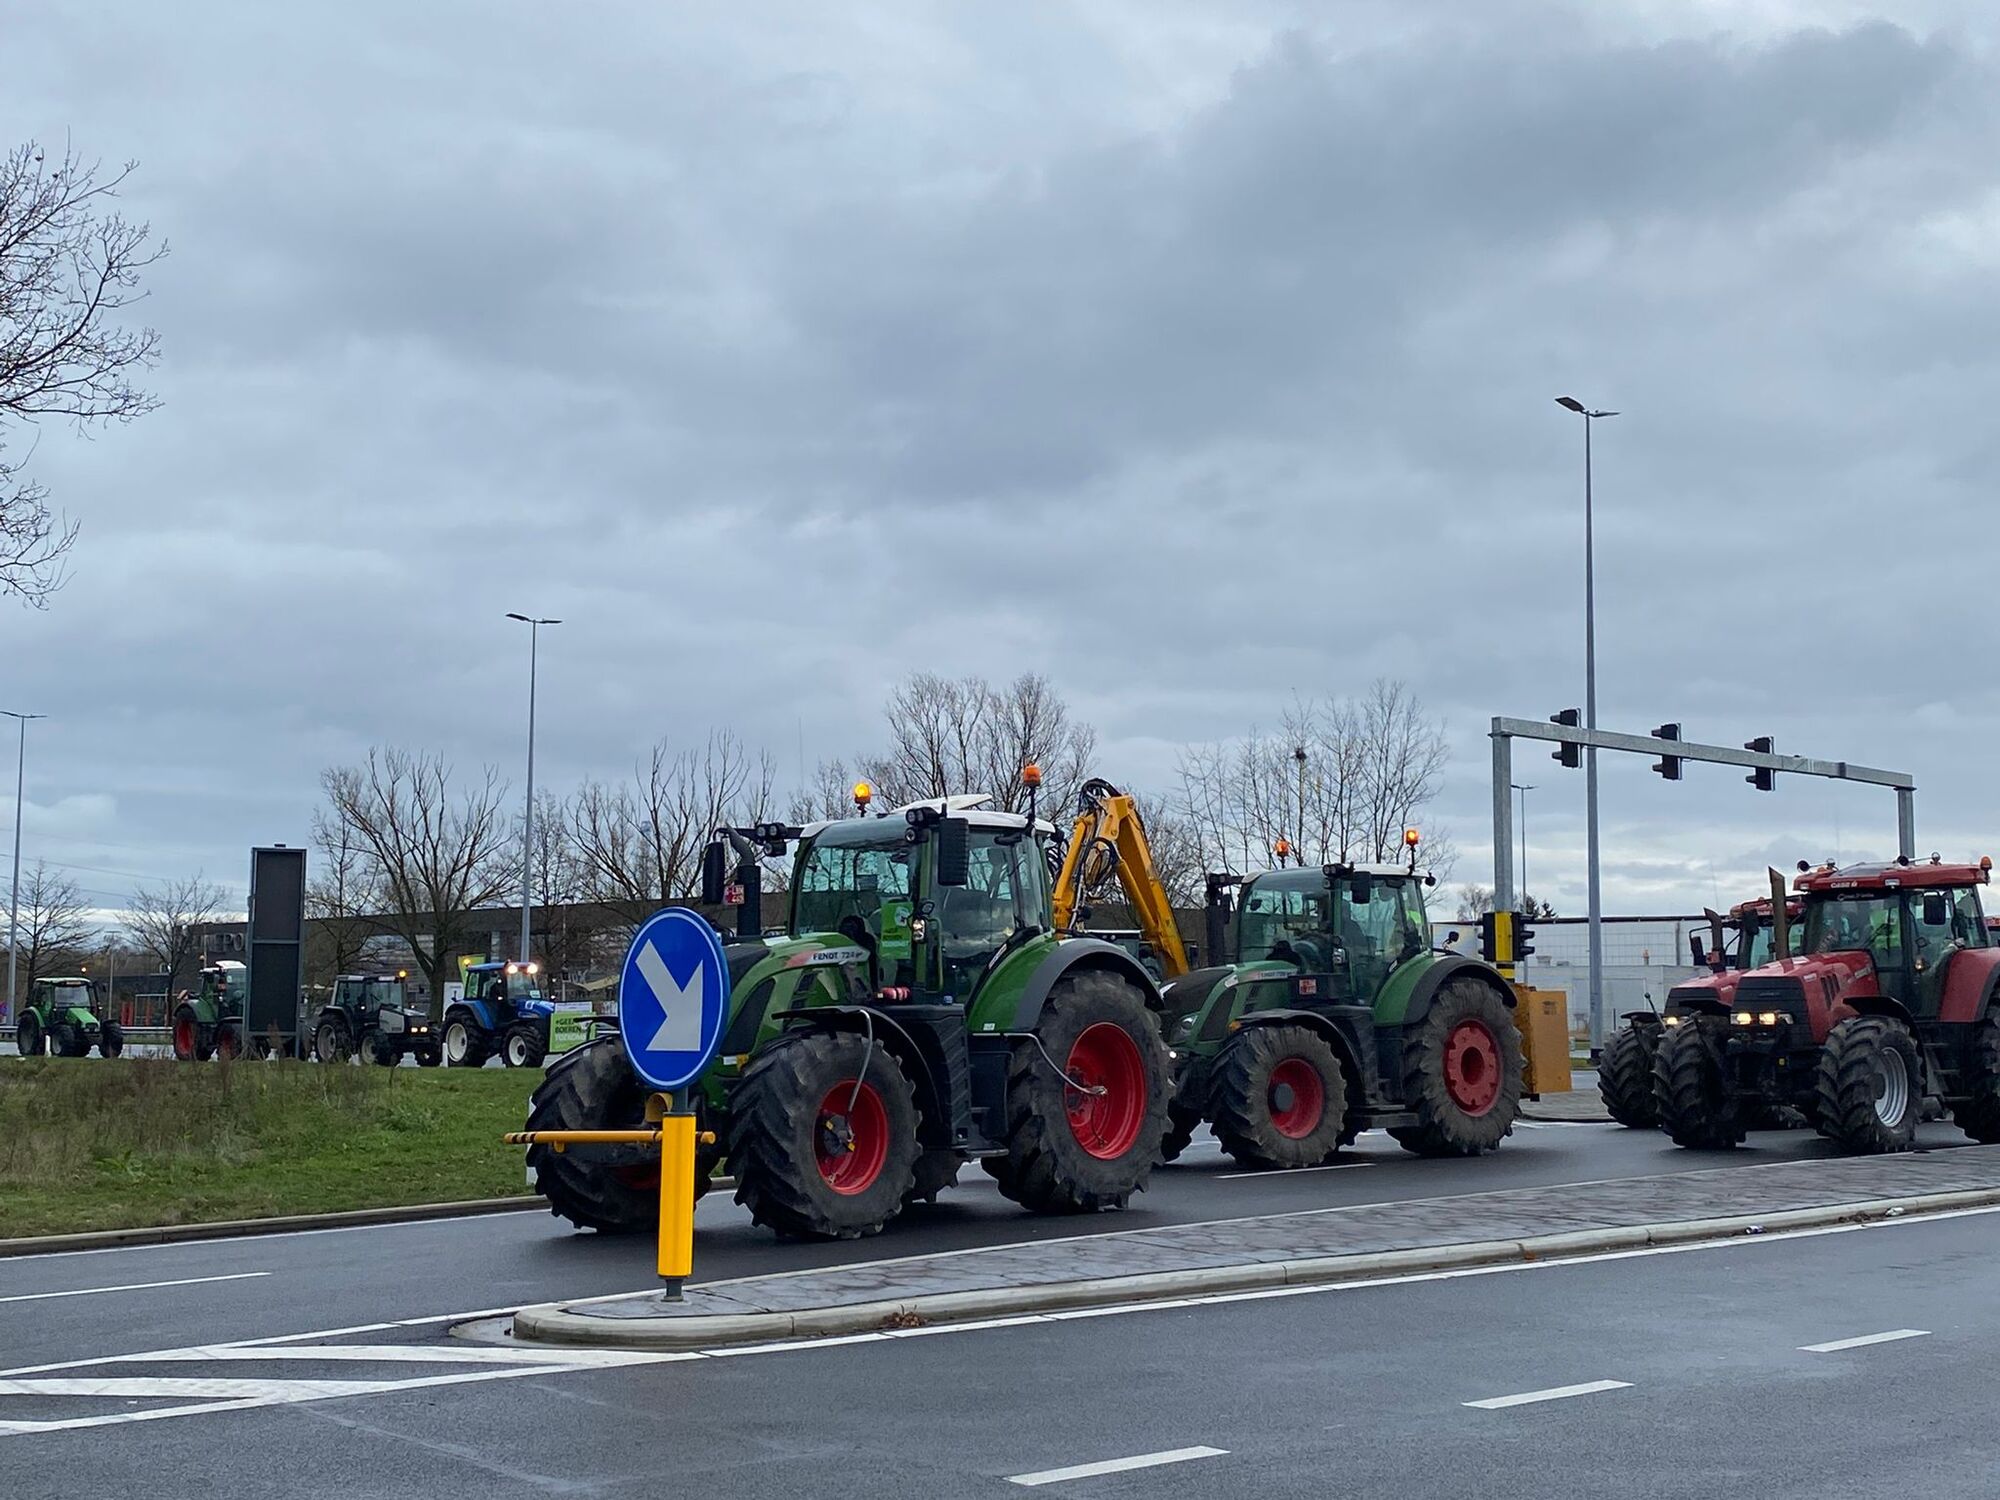 Honderden boze boeren rijden in stoet van tractoren in kleine ring in Hasselt